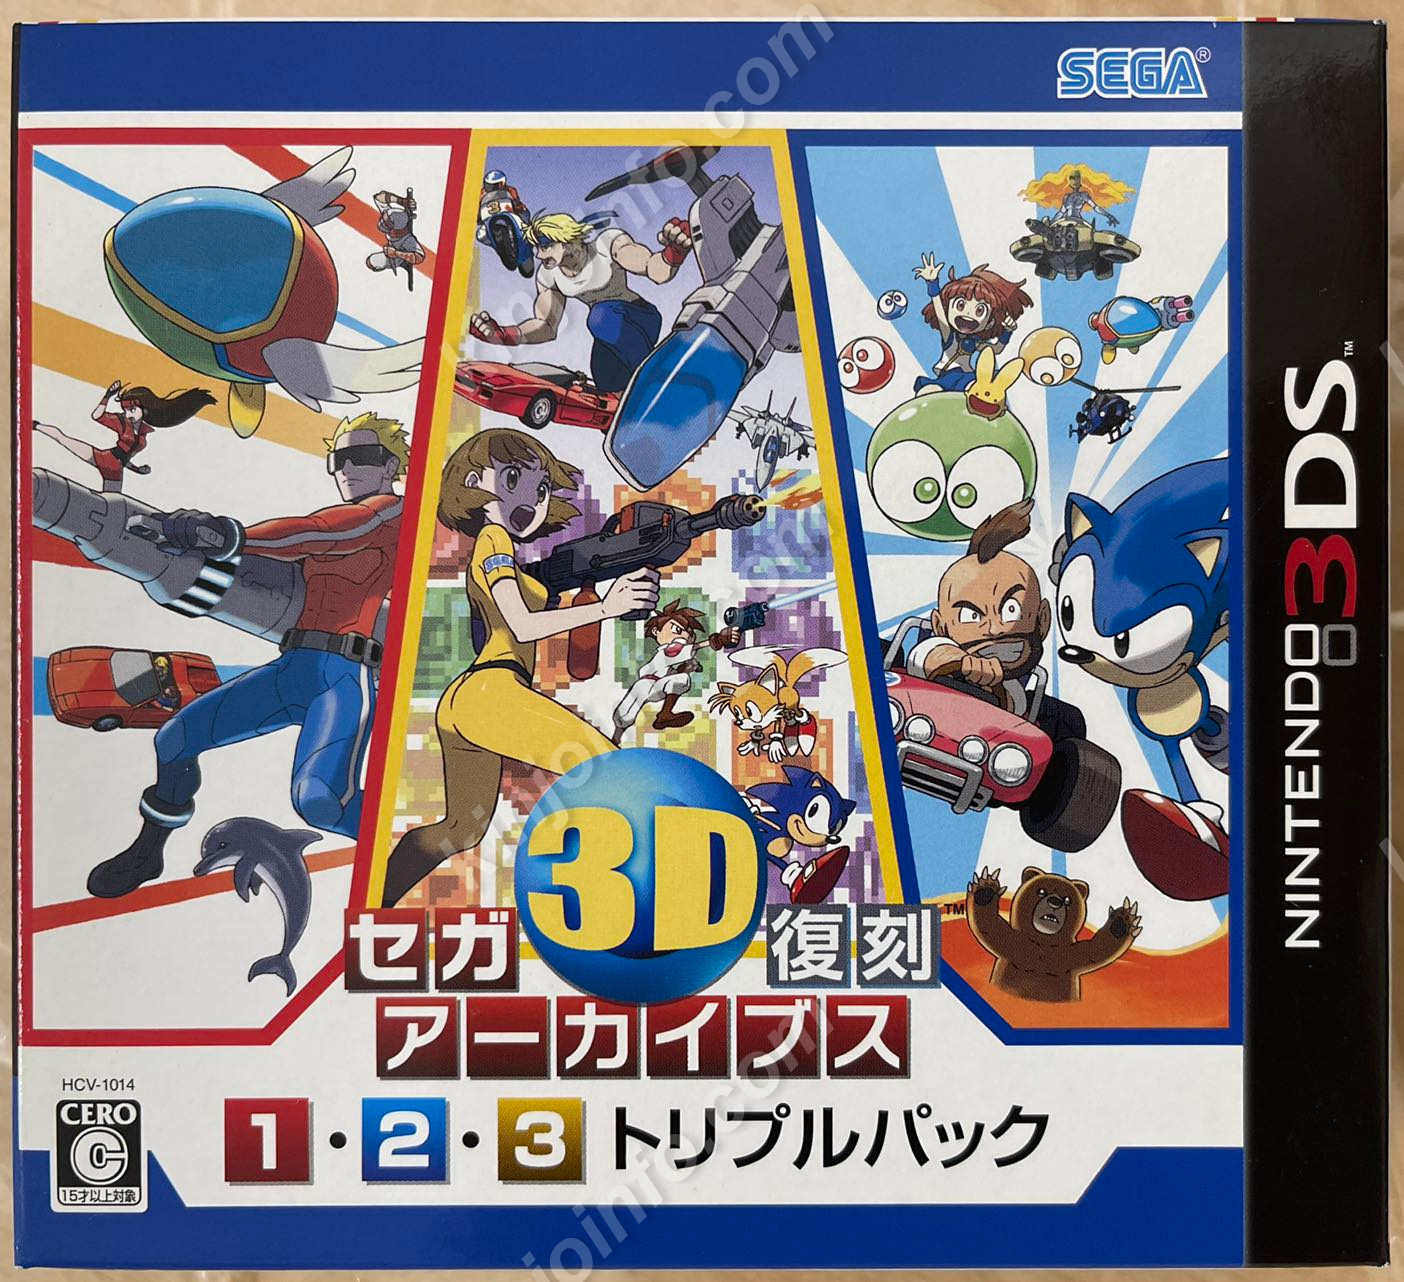 セガ3D復刻アーカイブス1・2・3 トリプルパック【新品未開封・3DS日本版】